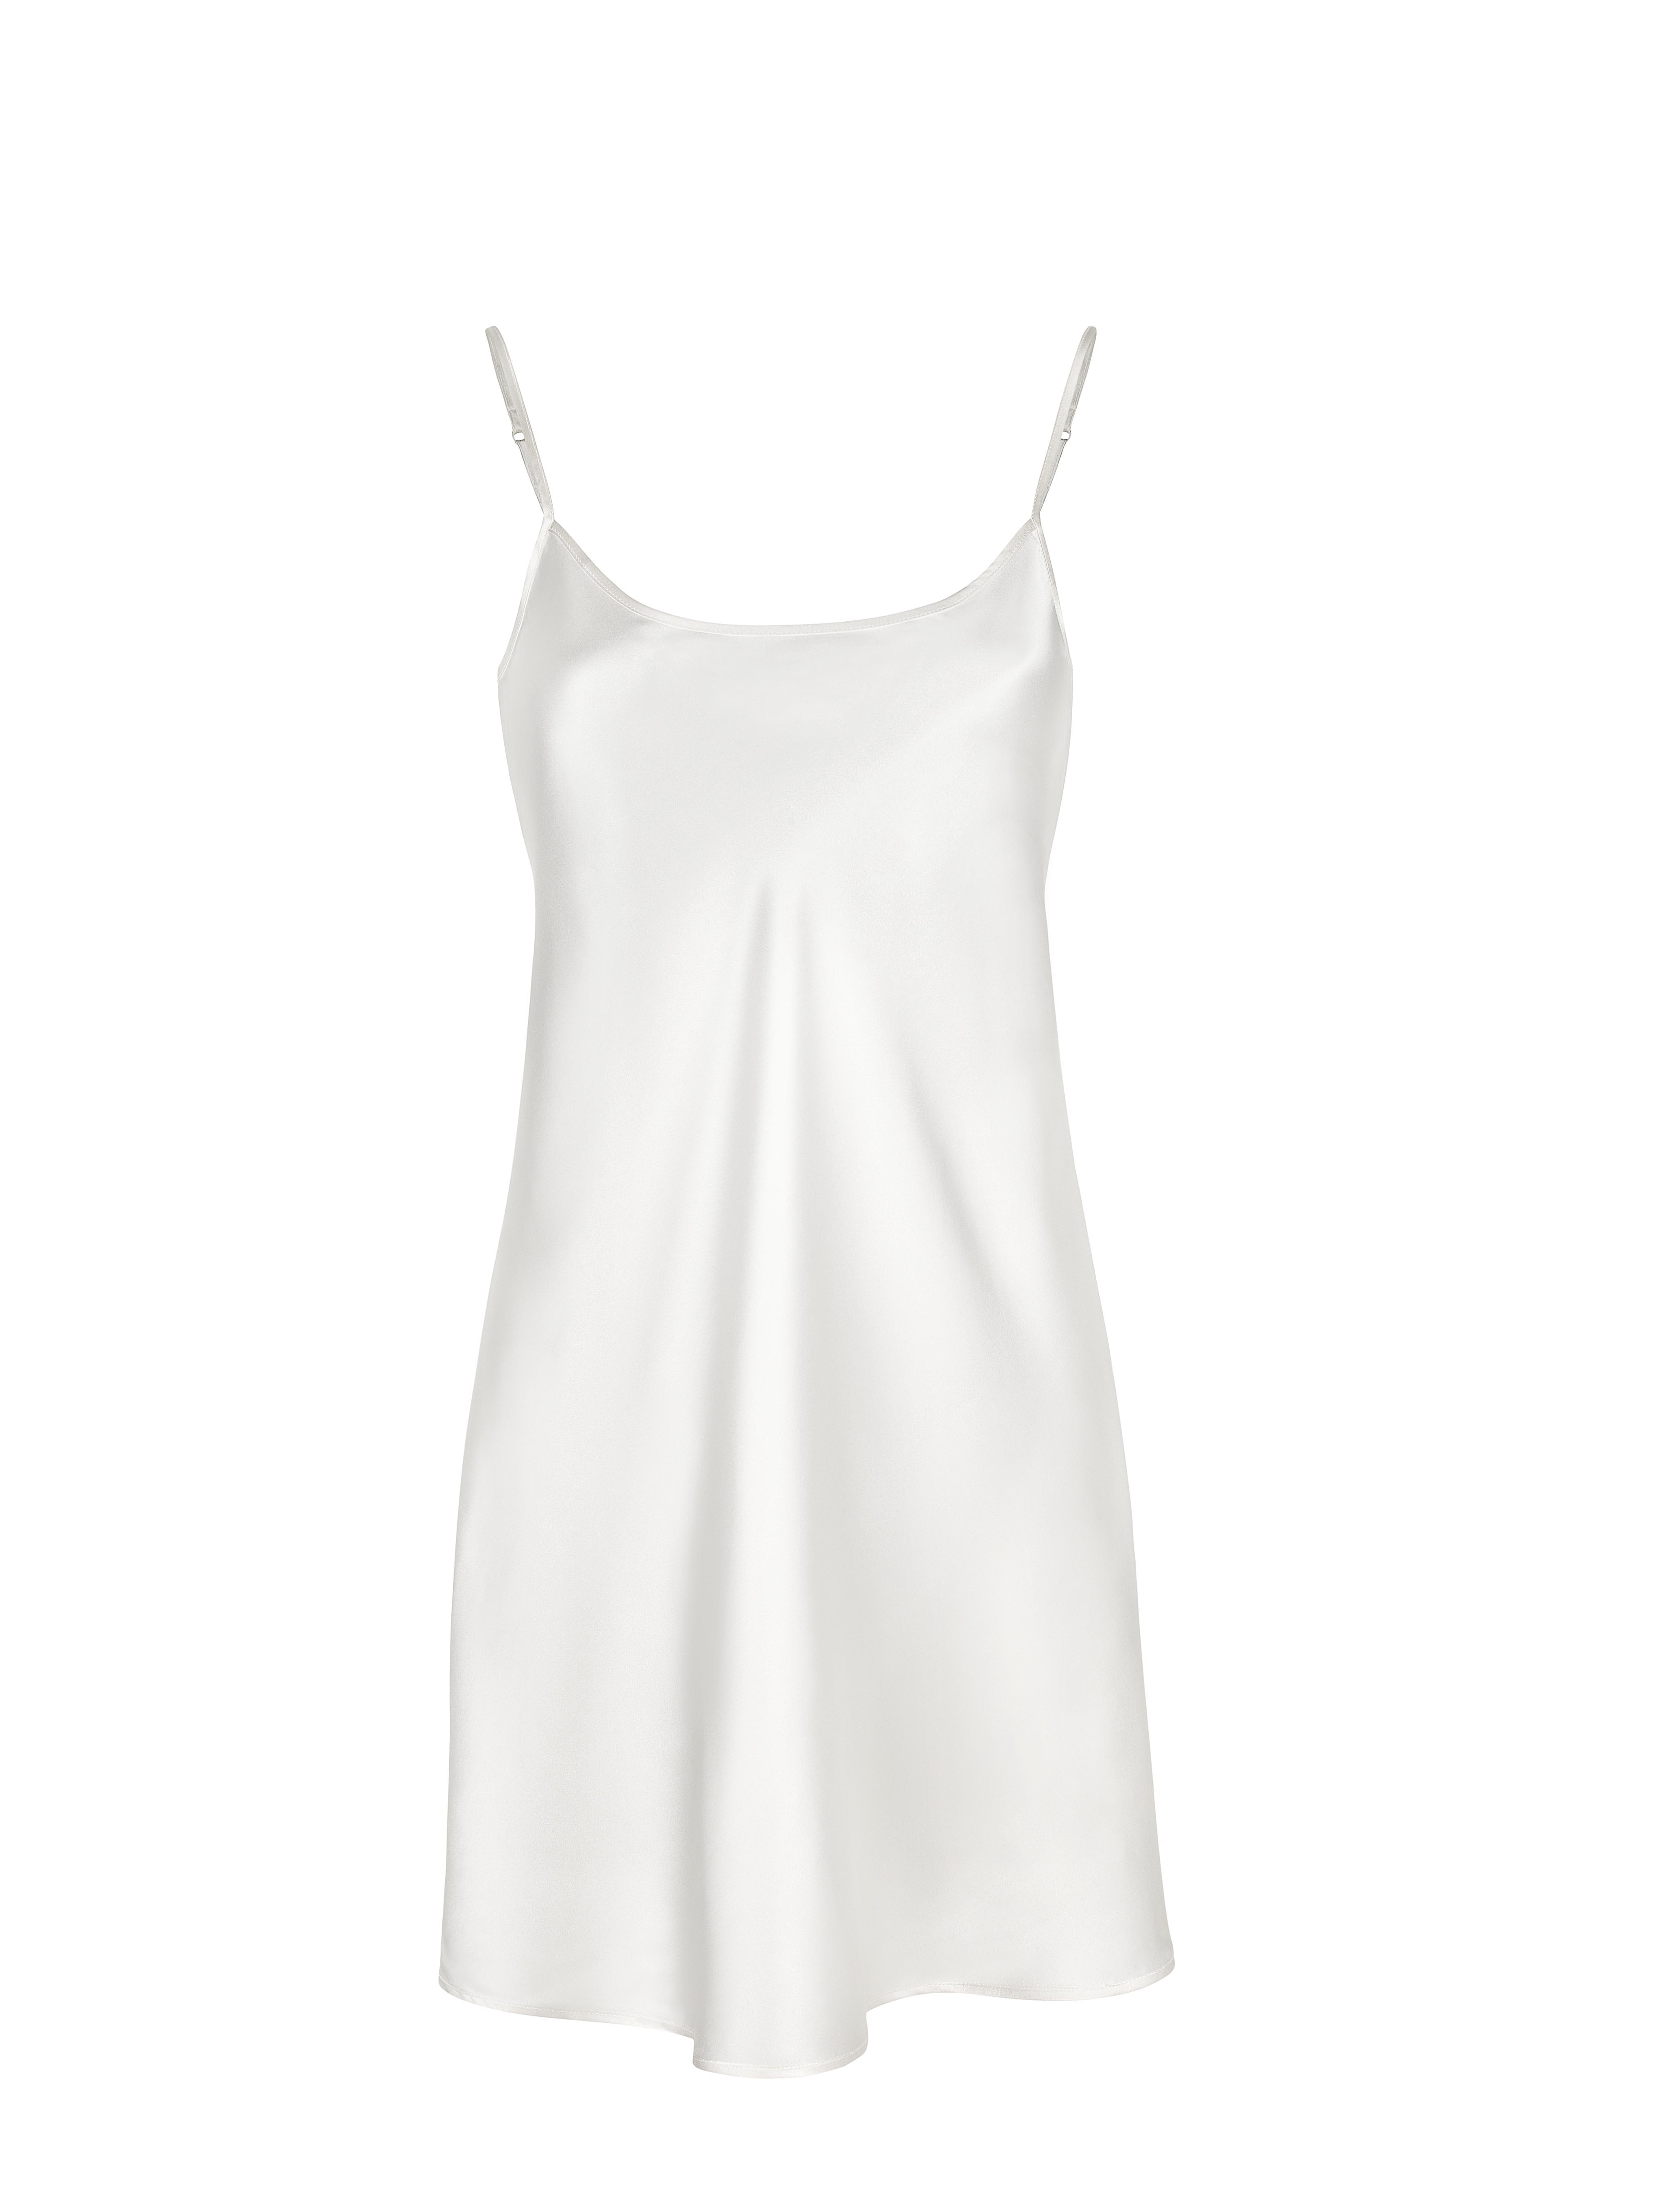 Ночная сорочка Анжелика Цвет: Белый (48), размер {}{}